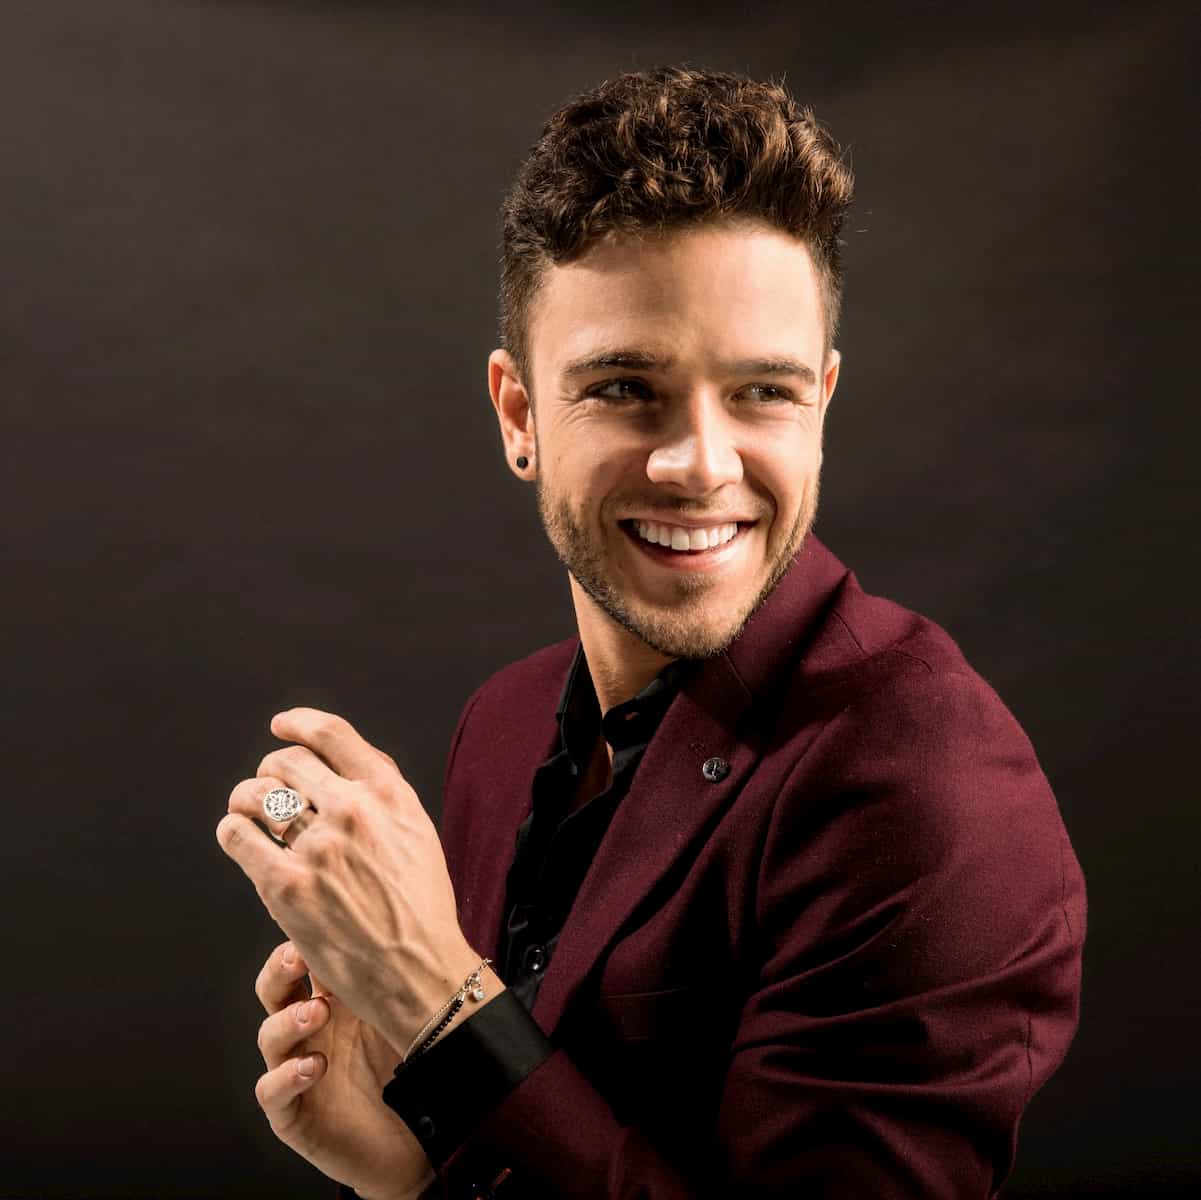 Luca Hänni bei Let's dance 2020 als Promi-Kandidat dabei